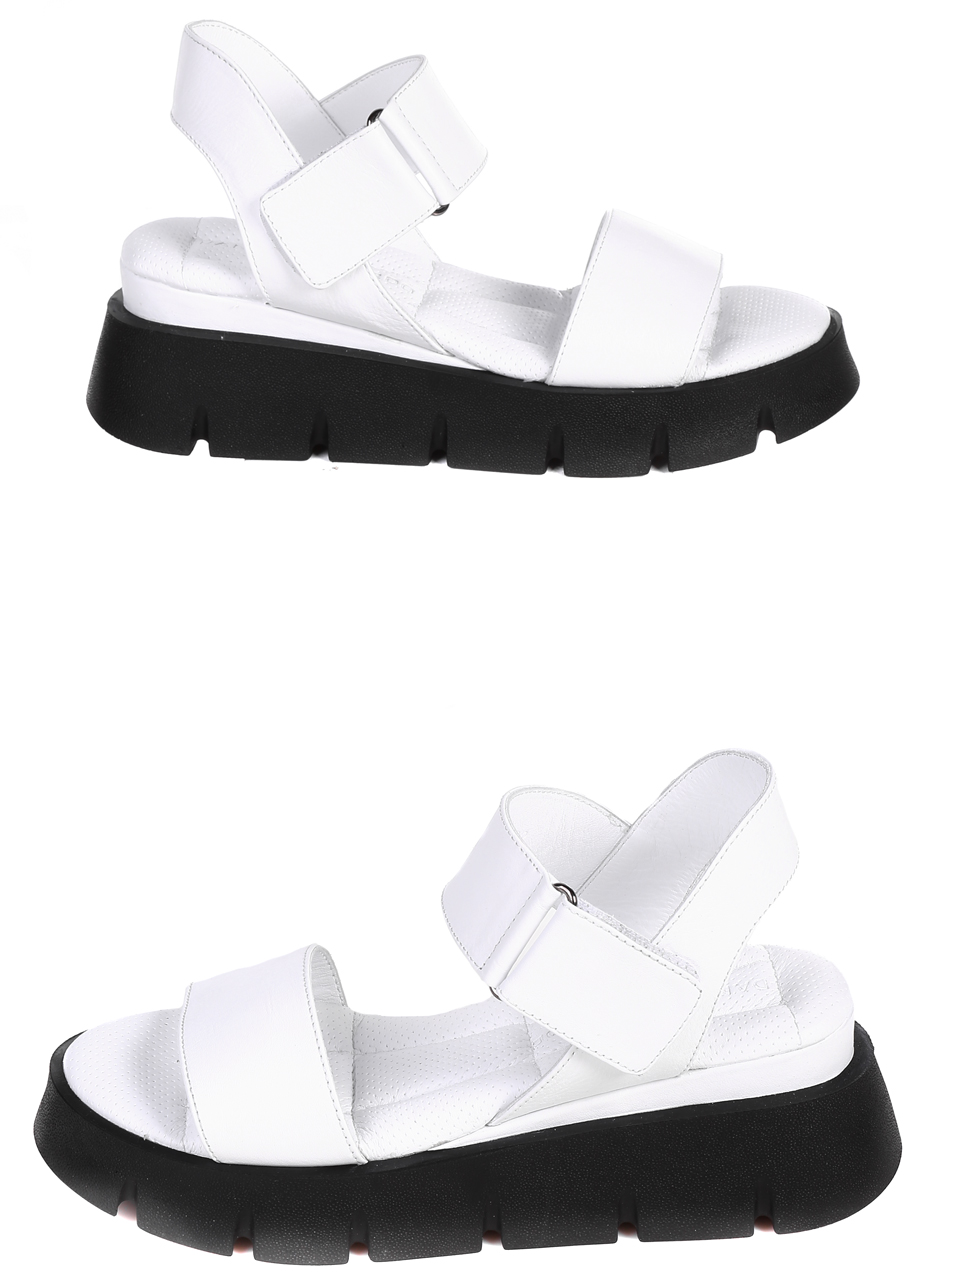 Ежедневни дамски комфортни сандали на платформа от естествена кожа 4AT-23327 white (22345)